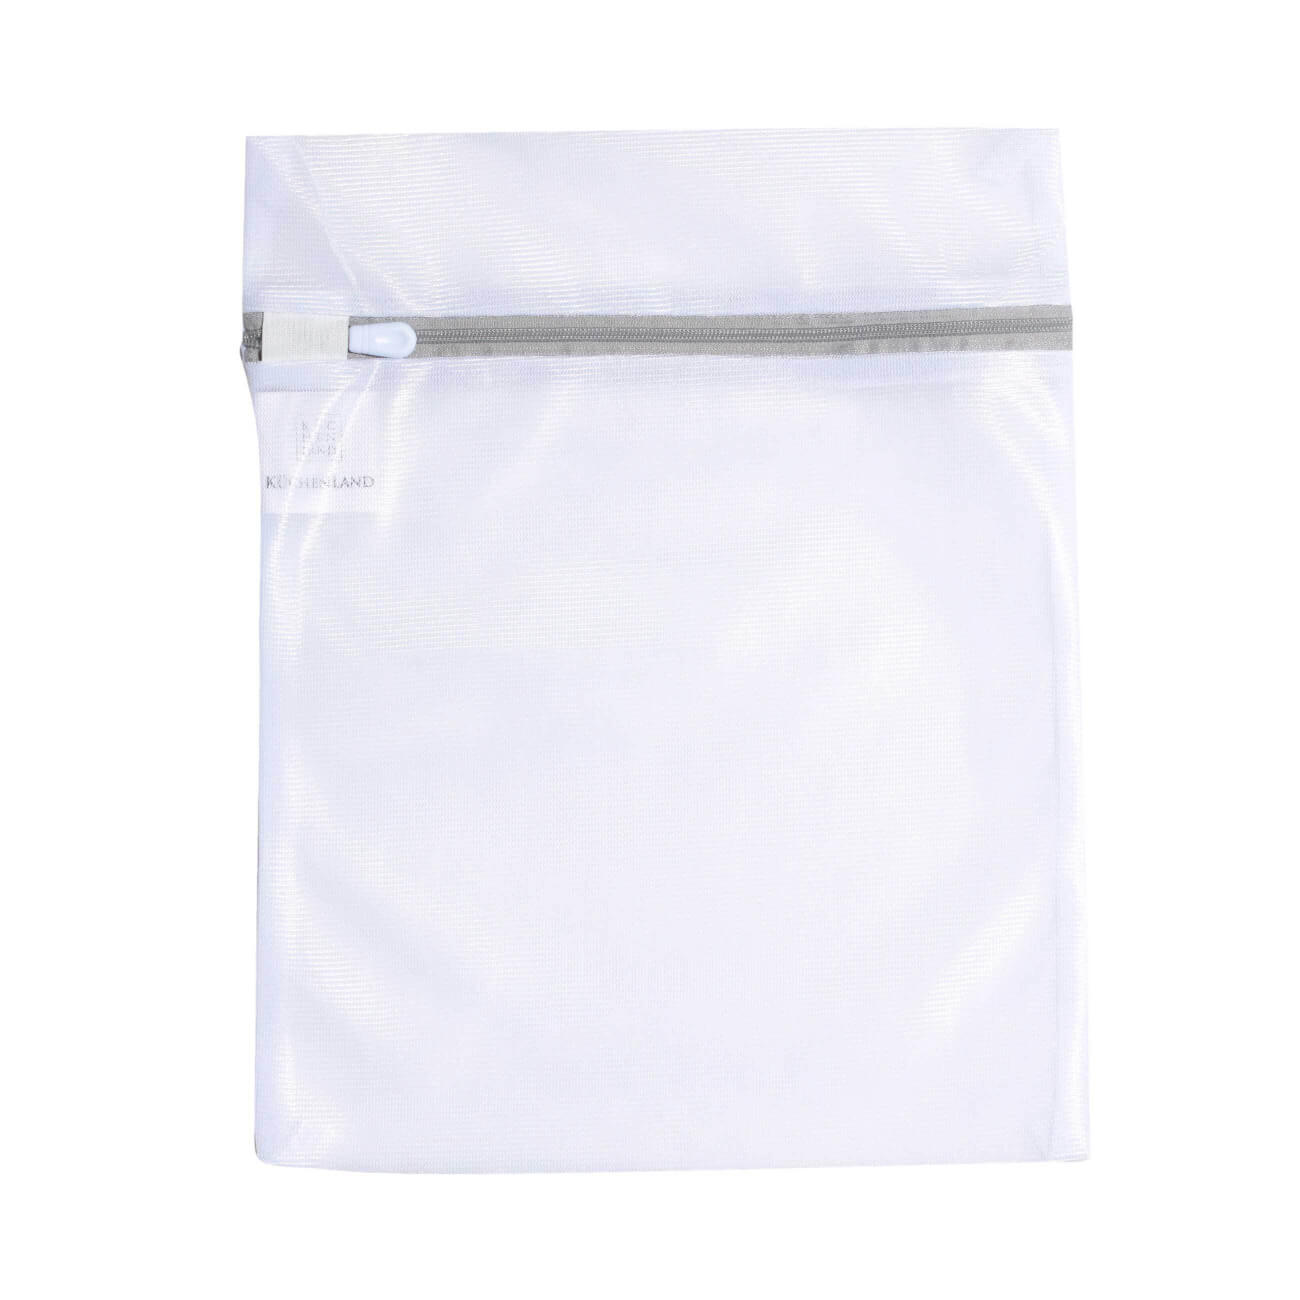 Мешок для стирки нижнего белья, 25х30 см, полиэстер, бело-серый, Safety plus мешок для стирки бюстгалтеров 15 см с защитой полиэстер safety